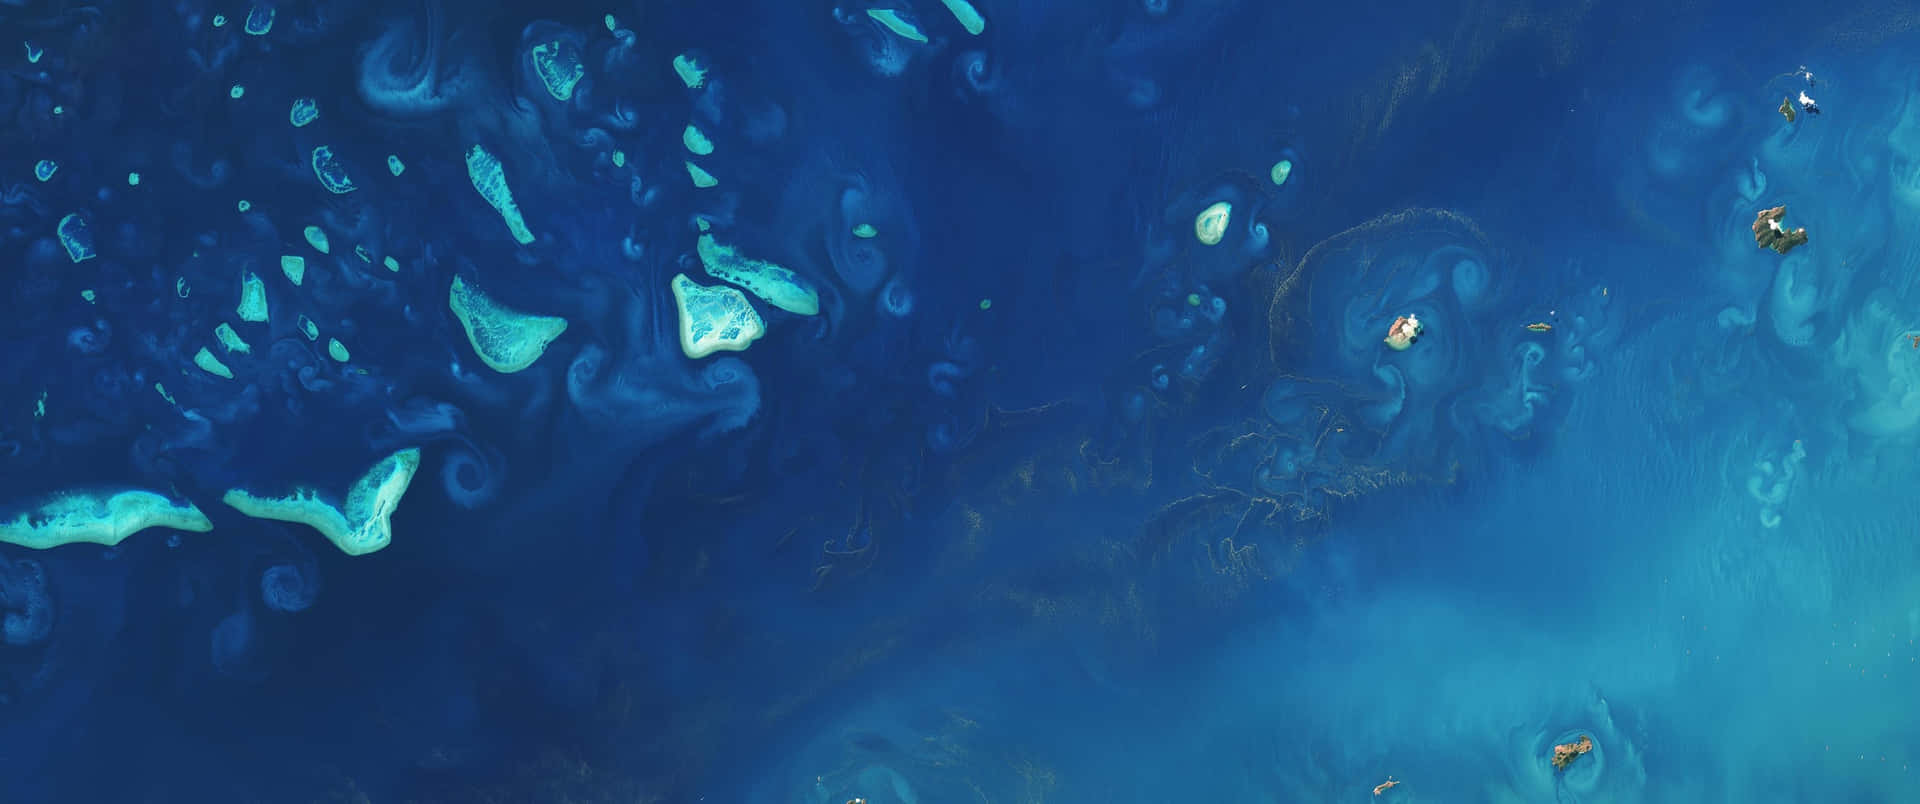 3440x1440psozialer Hintergrund Great Barrier Reef